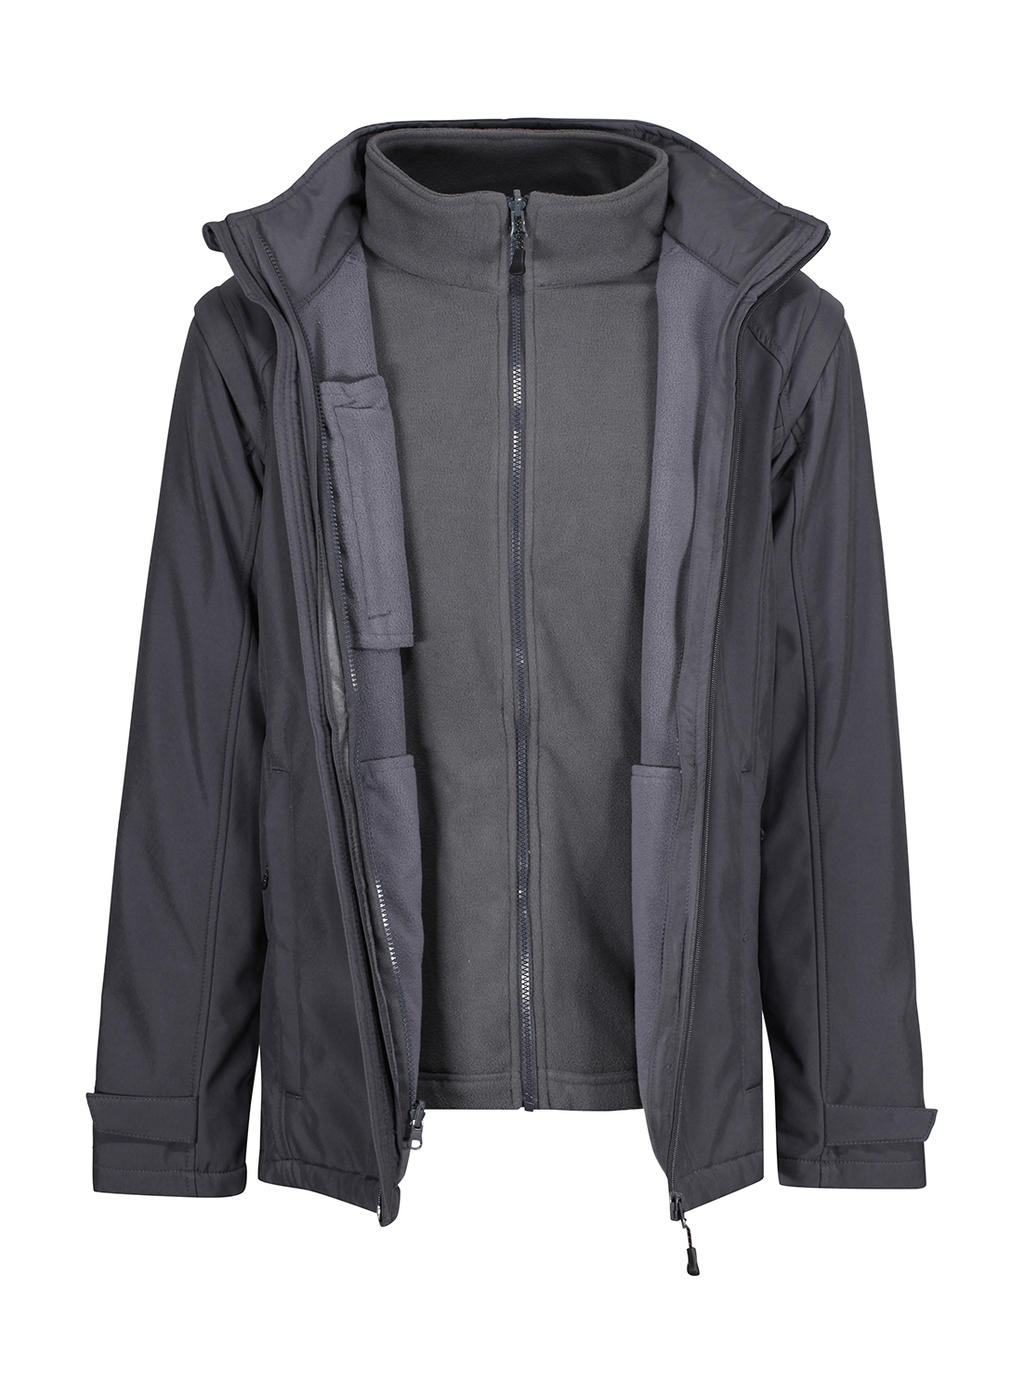 Bunda Erasmus 4-in-1 Softshell Jacket - seal grey/seal grey